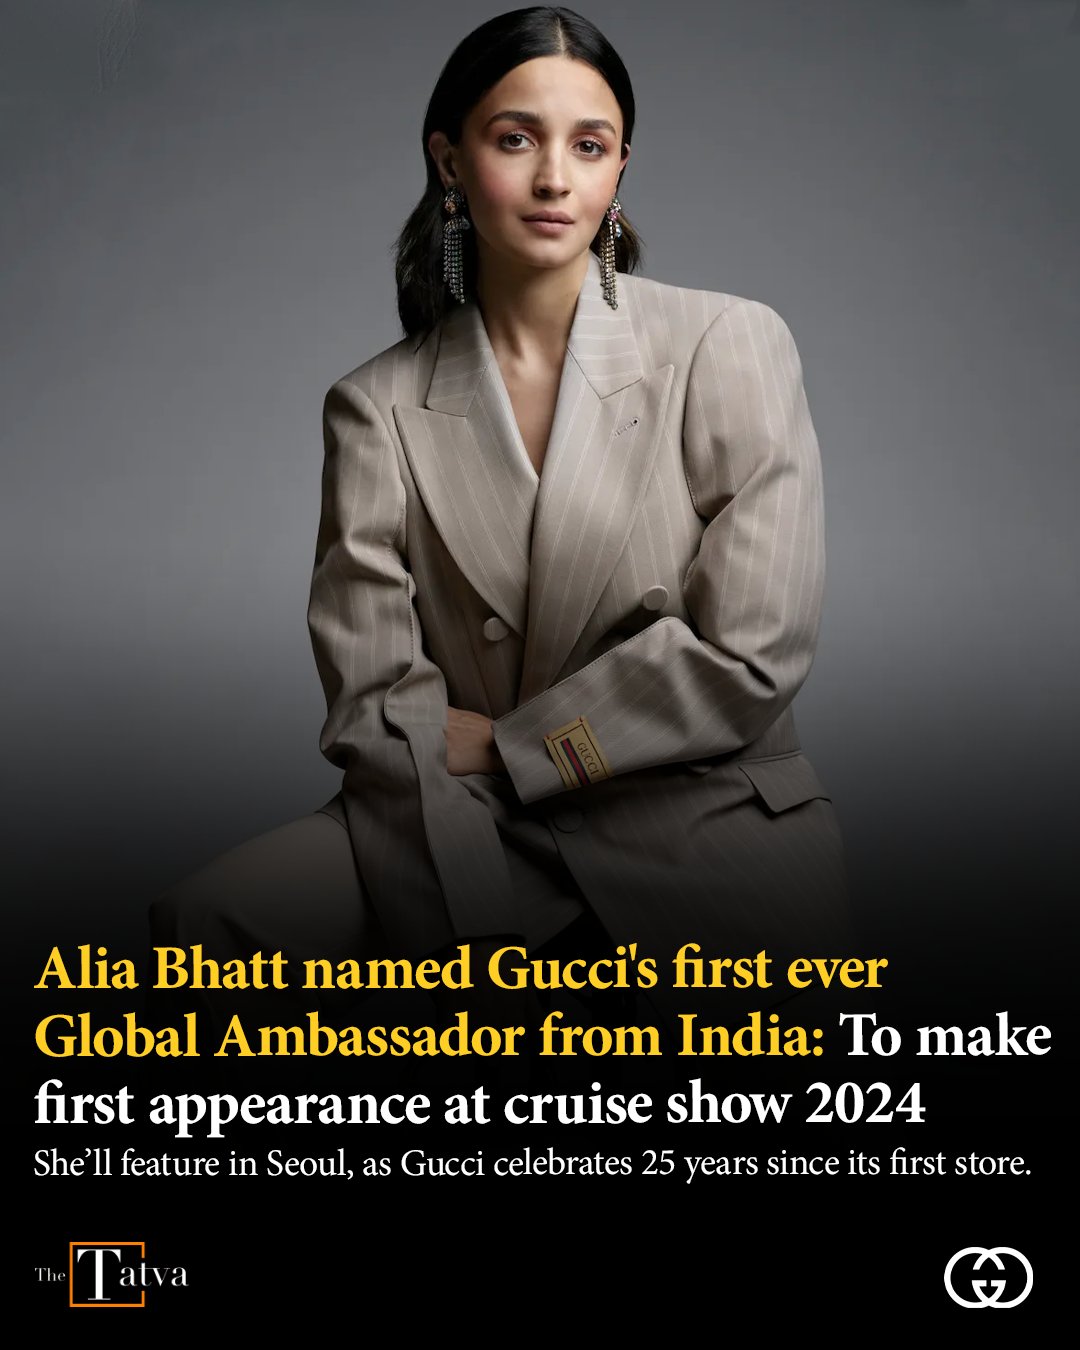 The Tatva on X: The Italian fashion house Gucci announced Alia